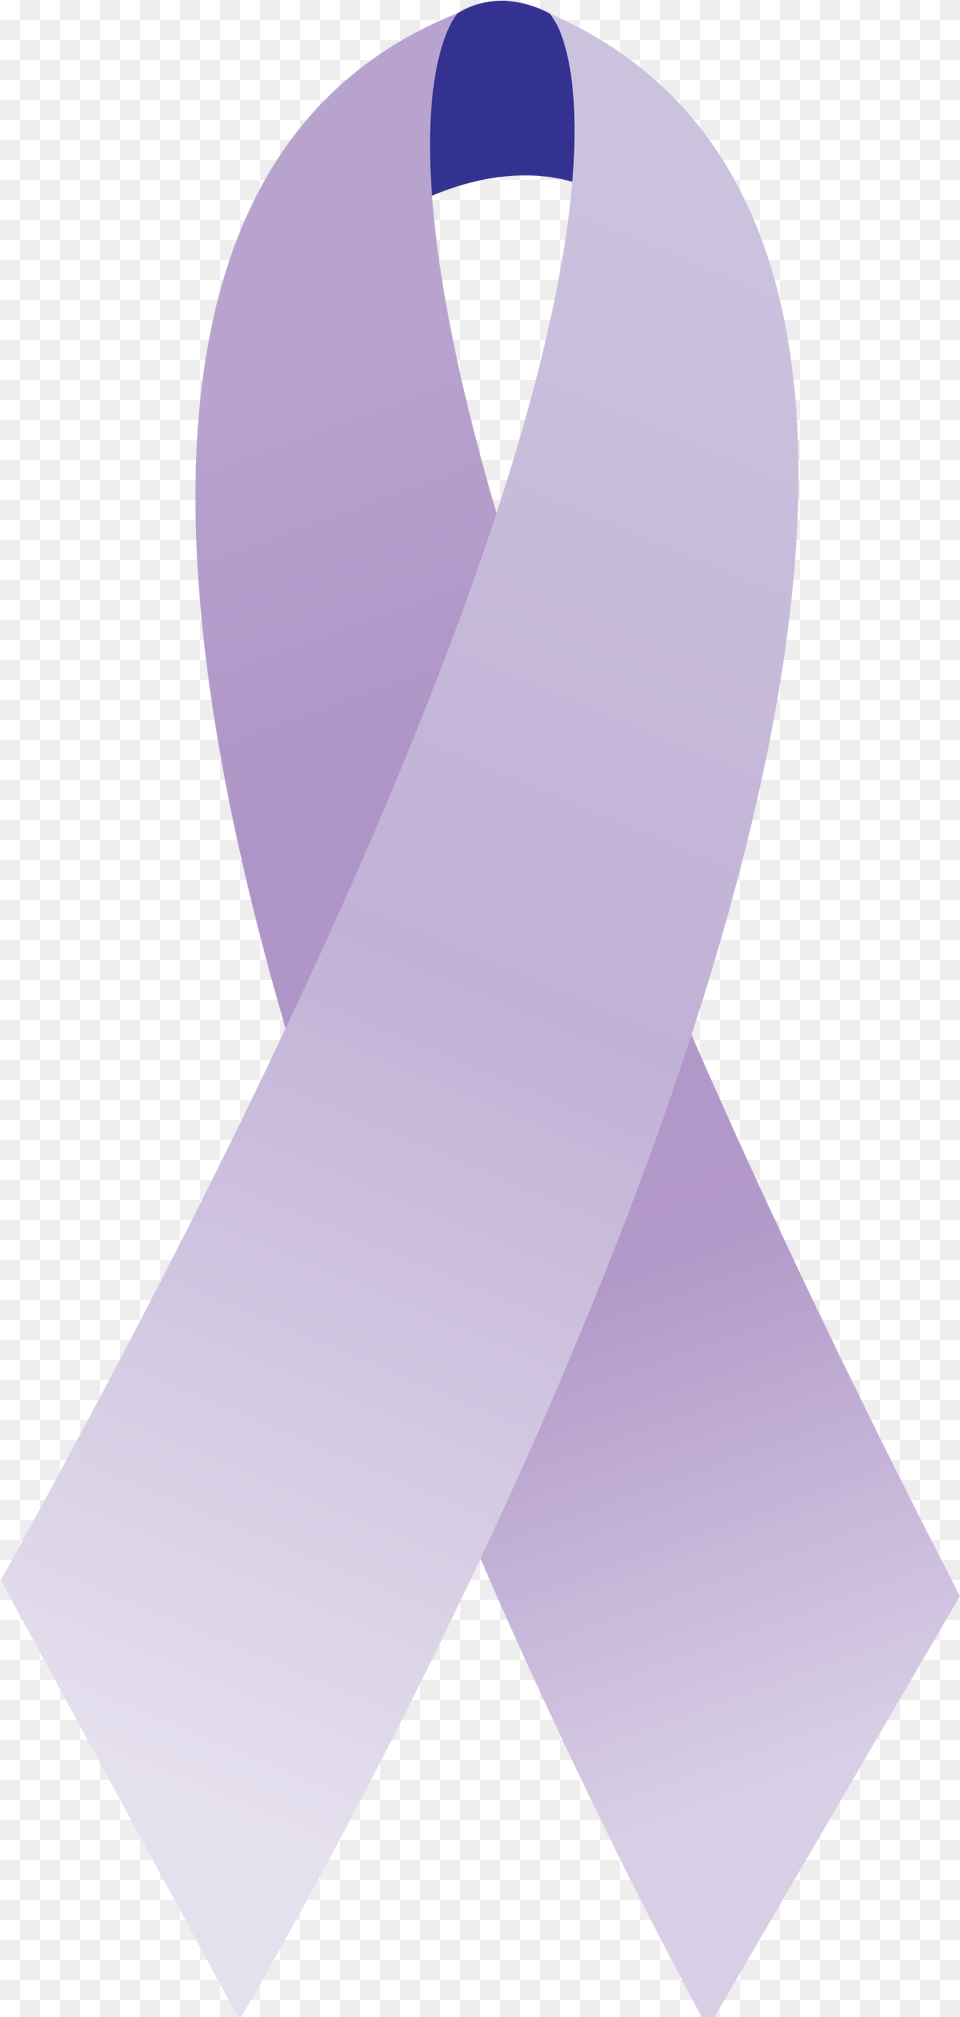 Filecancer Ribbon Generalsvg Wikipedia Cancer Ribbons Transparent Lavender, Sash Png Image